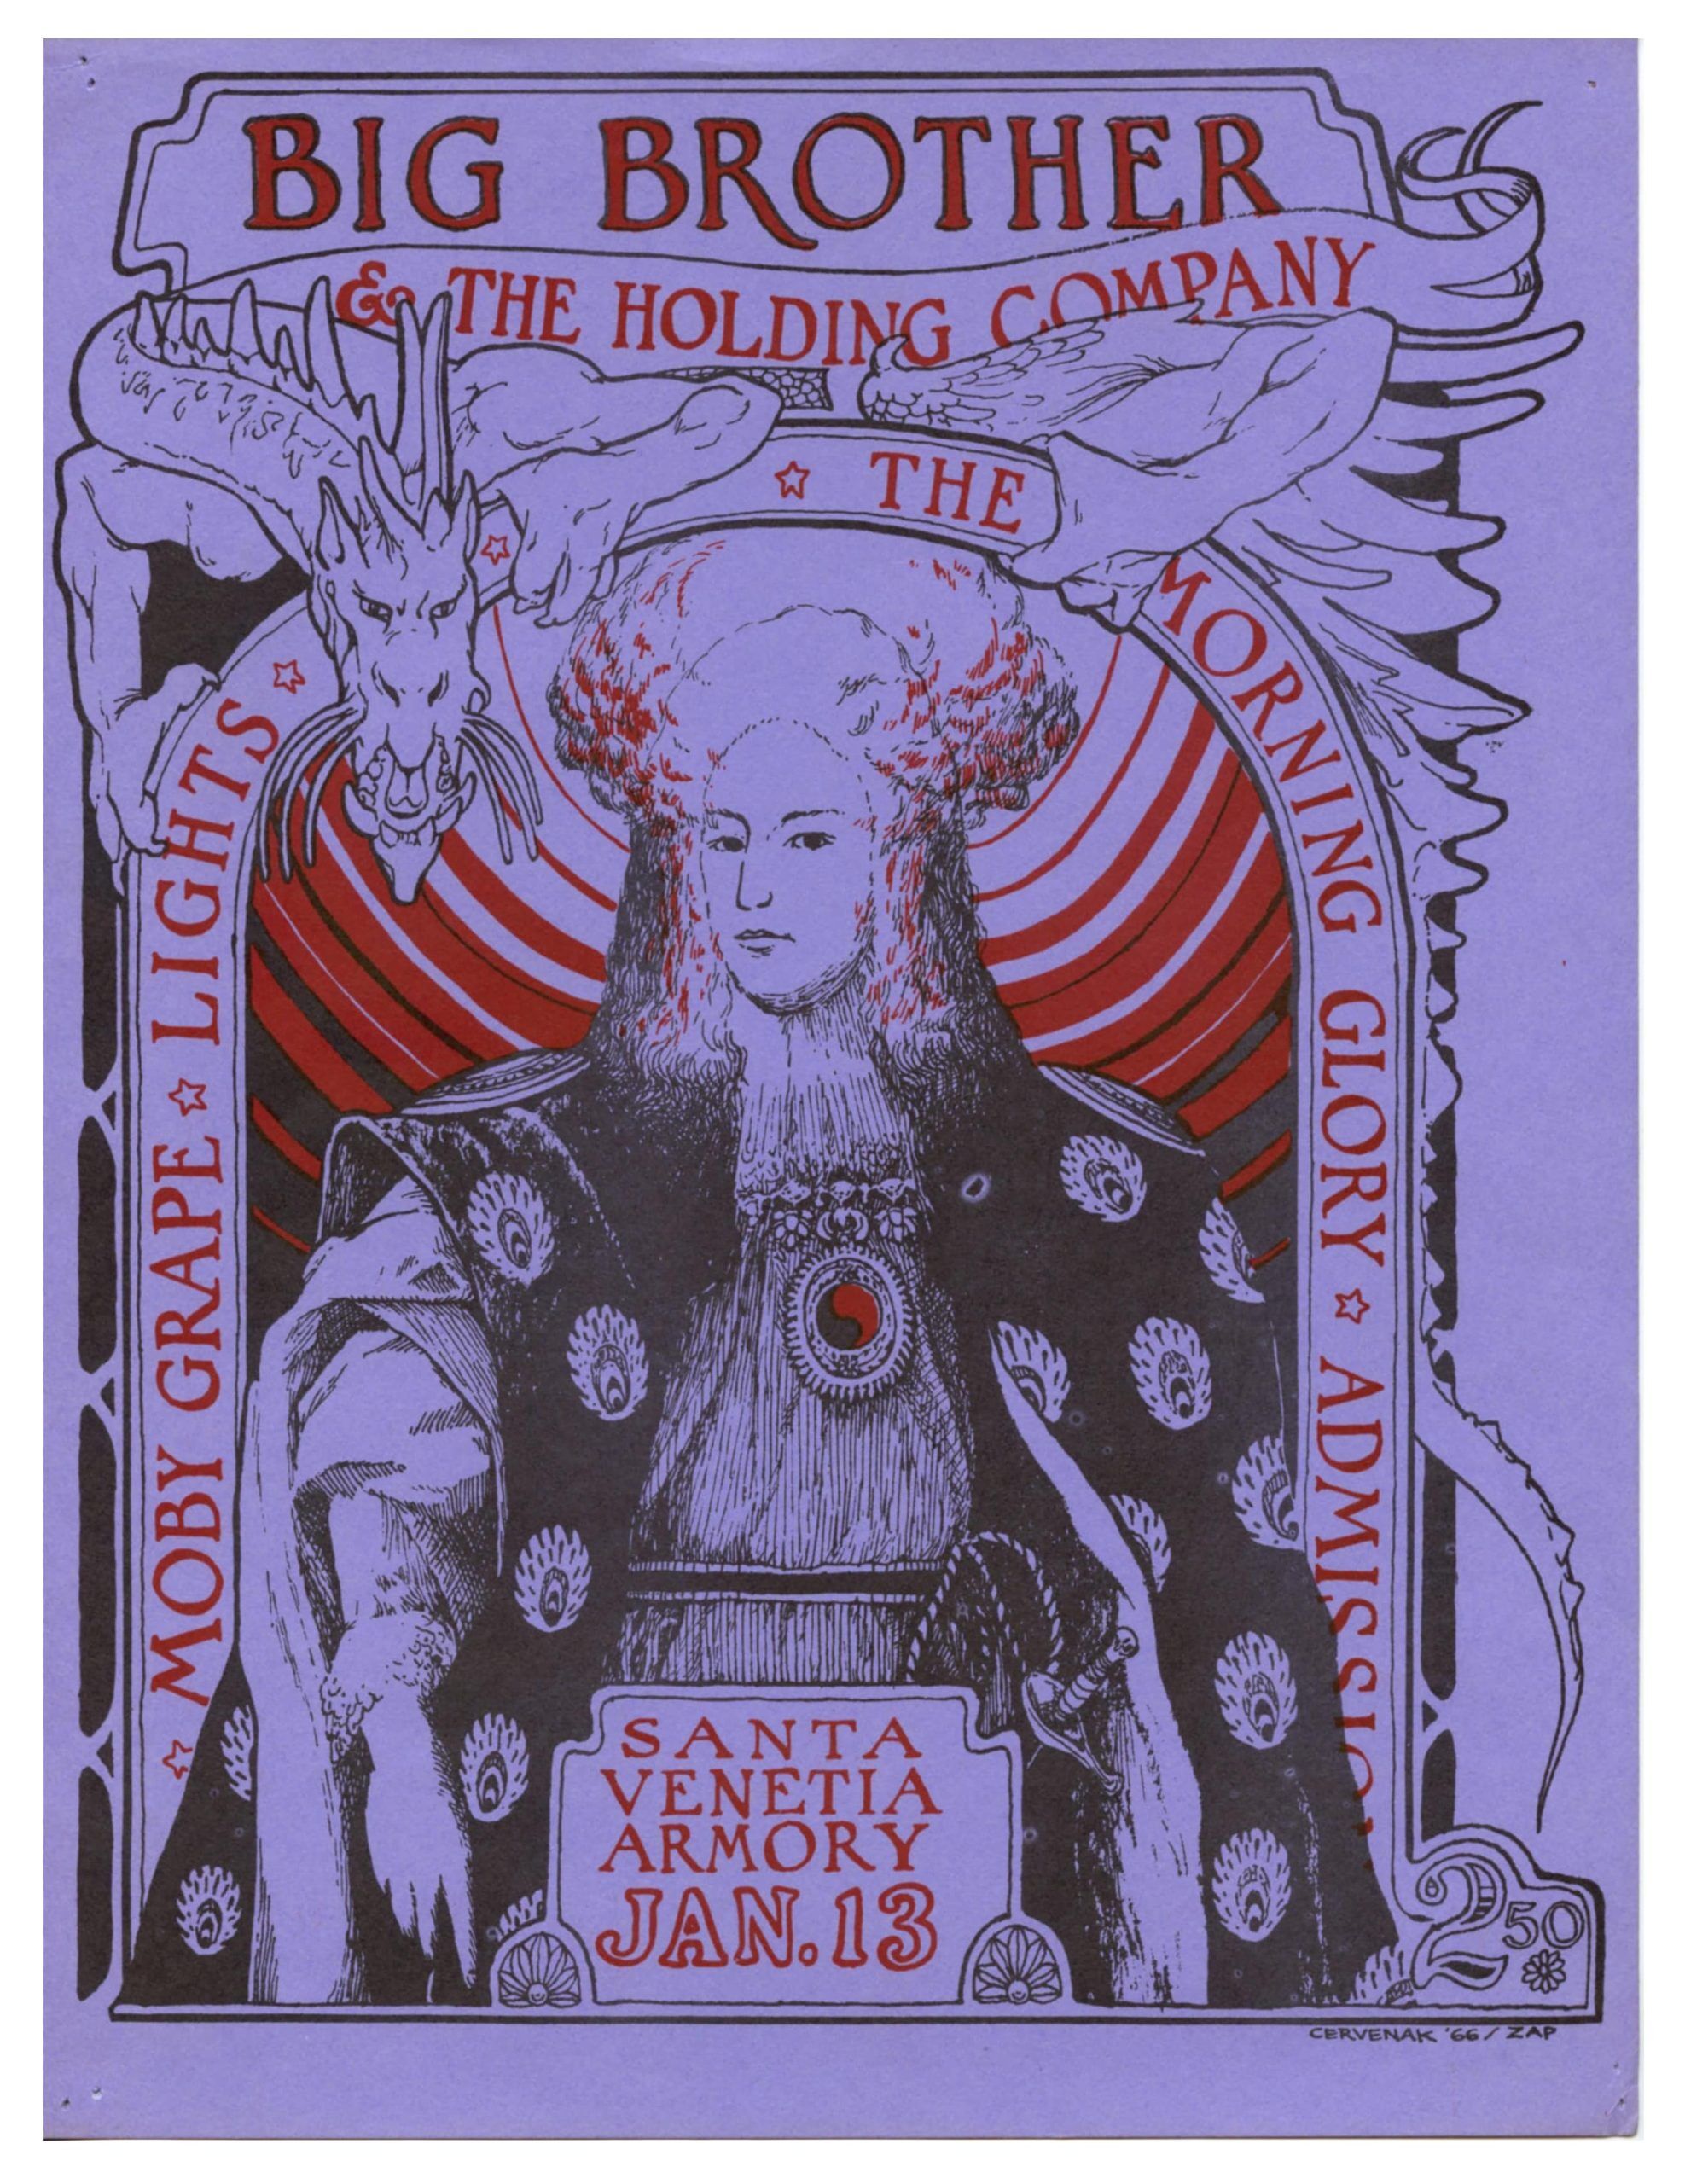 Big Brother and The Holding Company Handbill 1967 Santa Venetia AOR 2.312